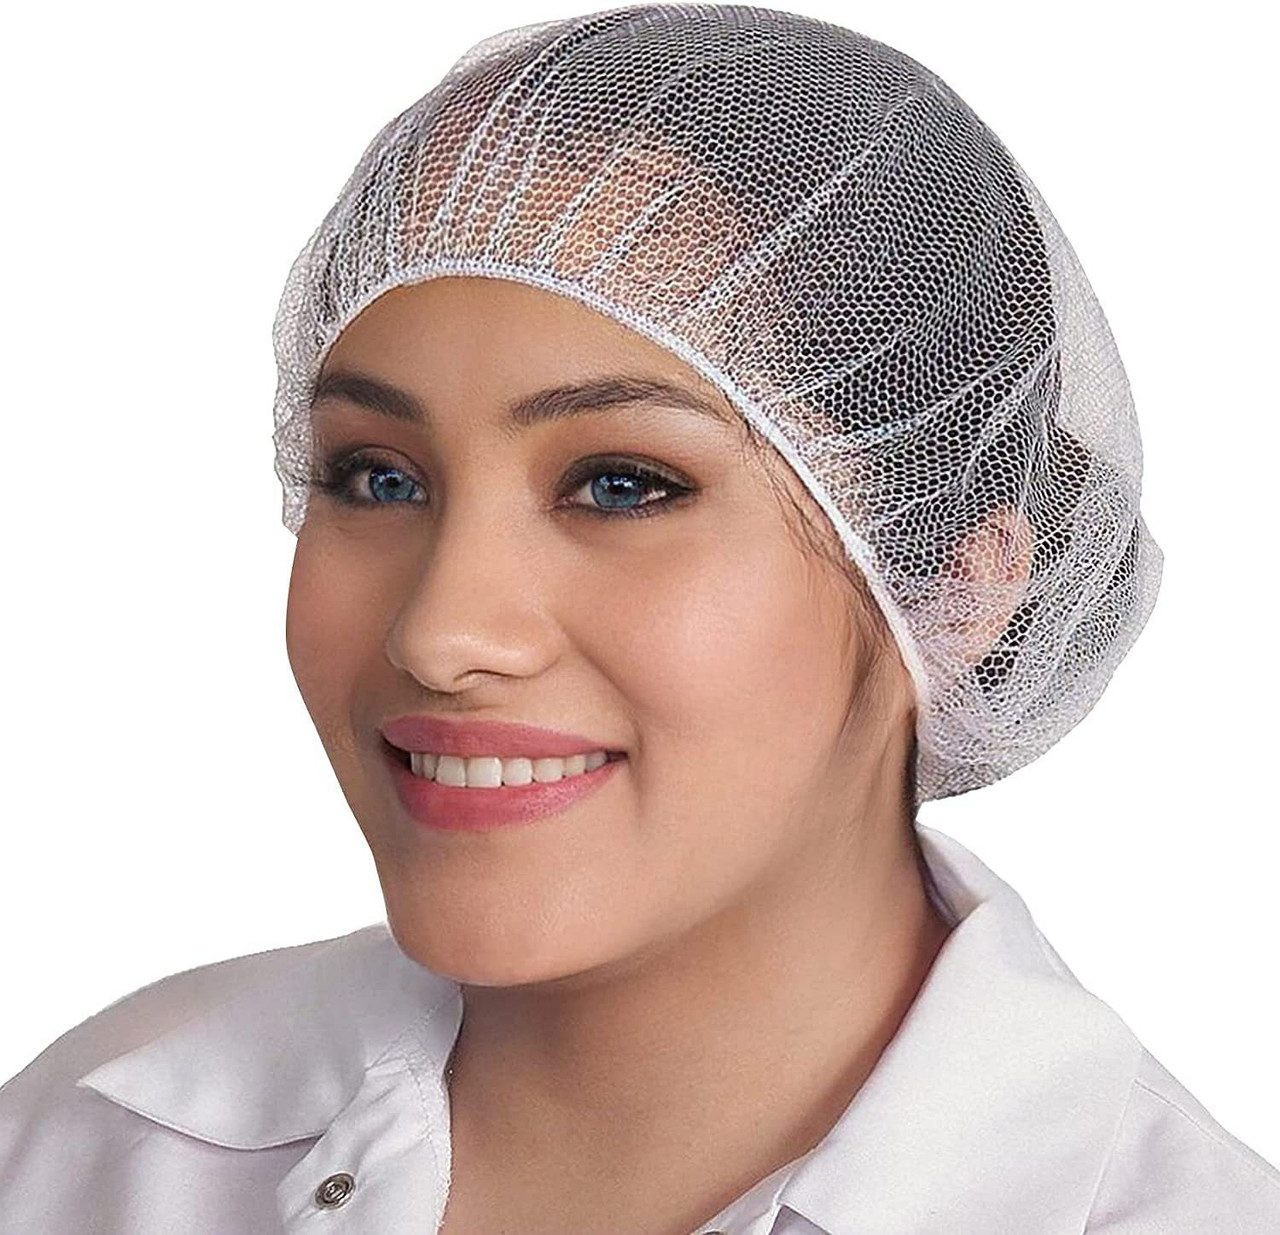 White Nylon Hair Nets 21" in Bulk. Pack of 1000 Disposable Hairnets Caps with Elastic Edge Mesh. St